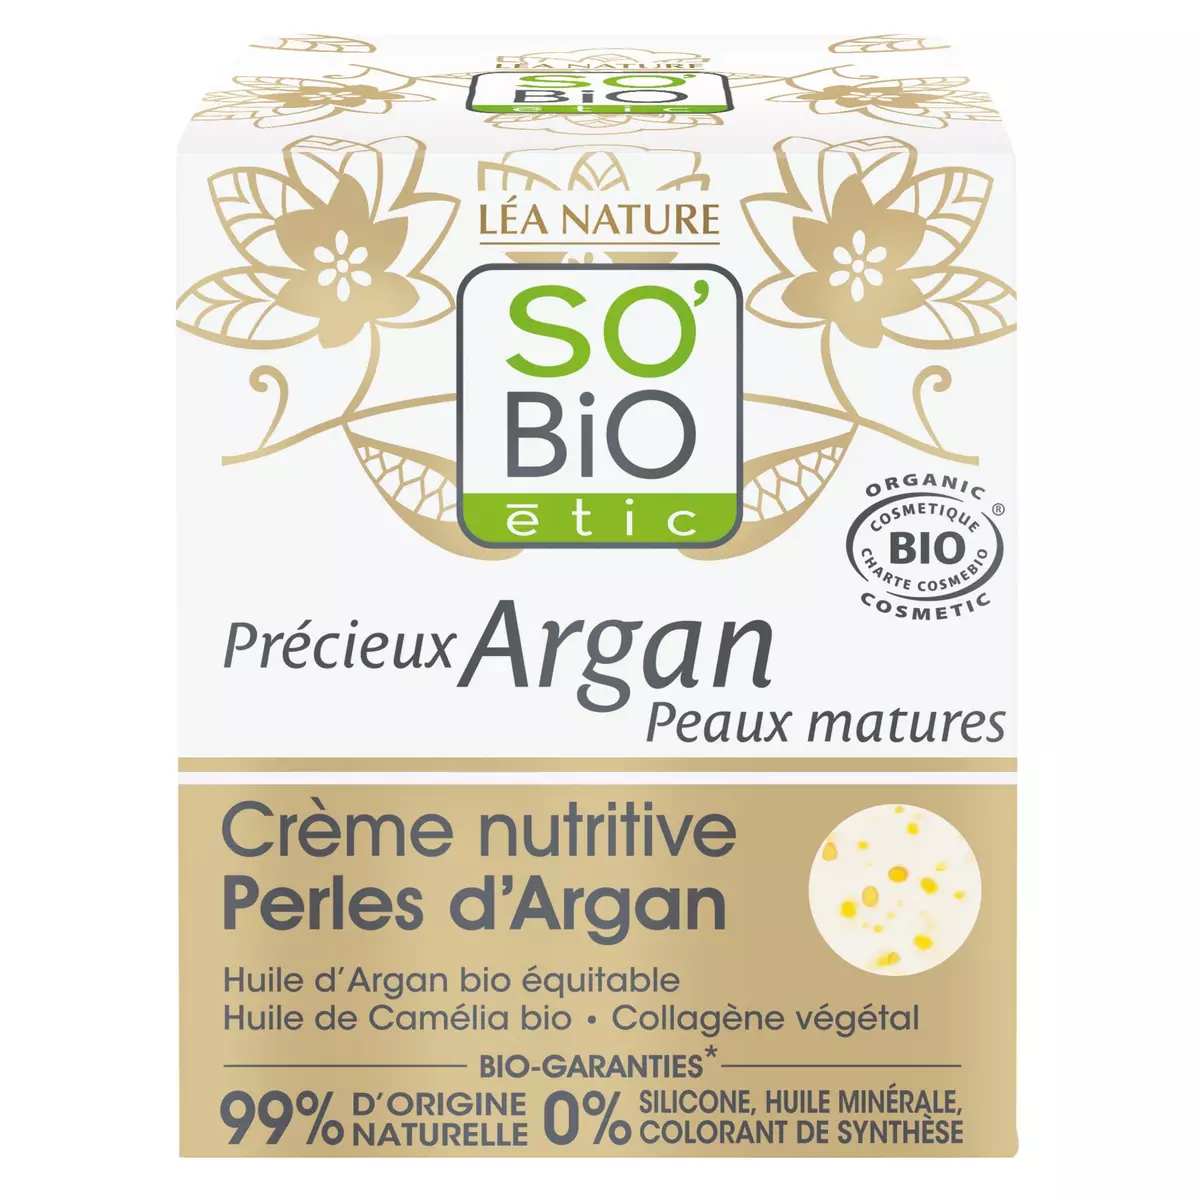 SO BIO ETIC Crème nutritive argan peaux mature 50ml